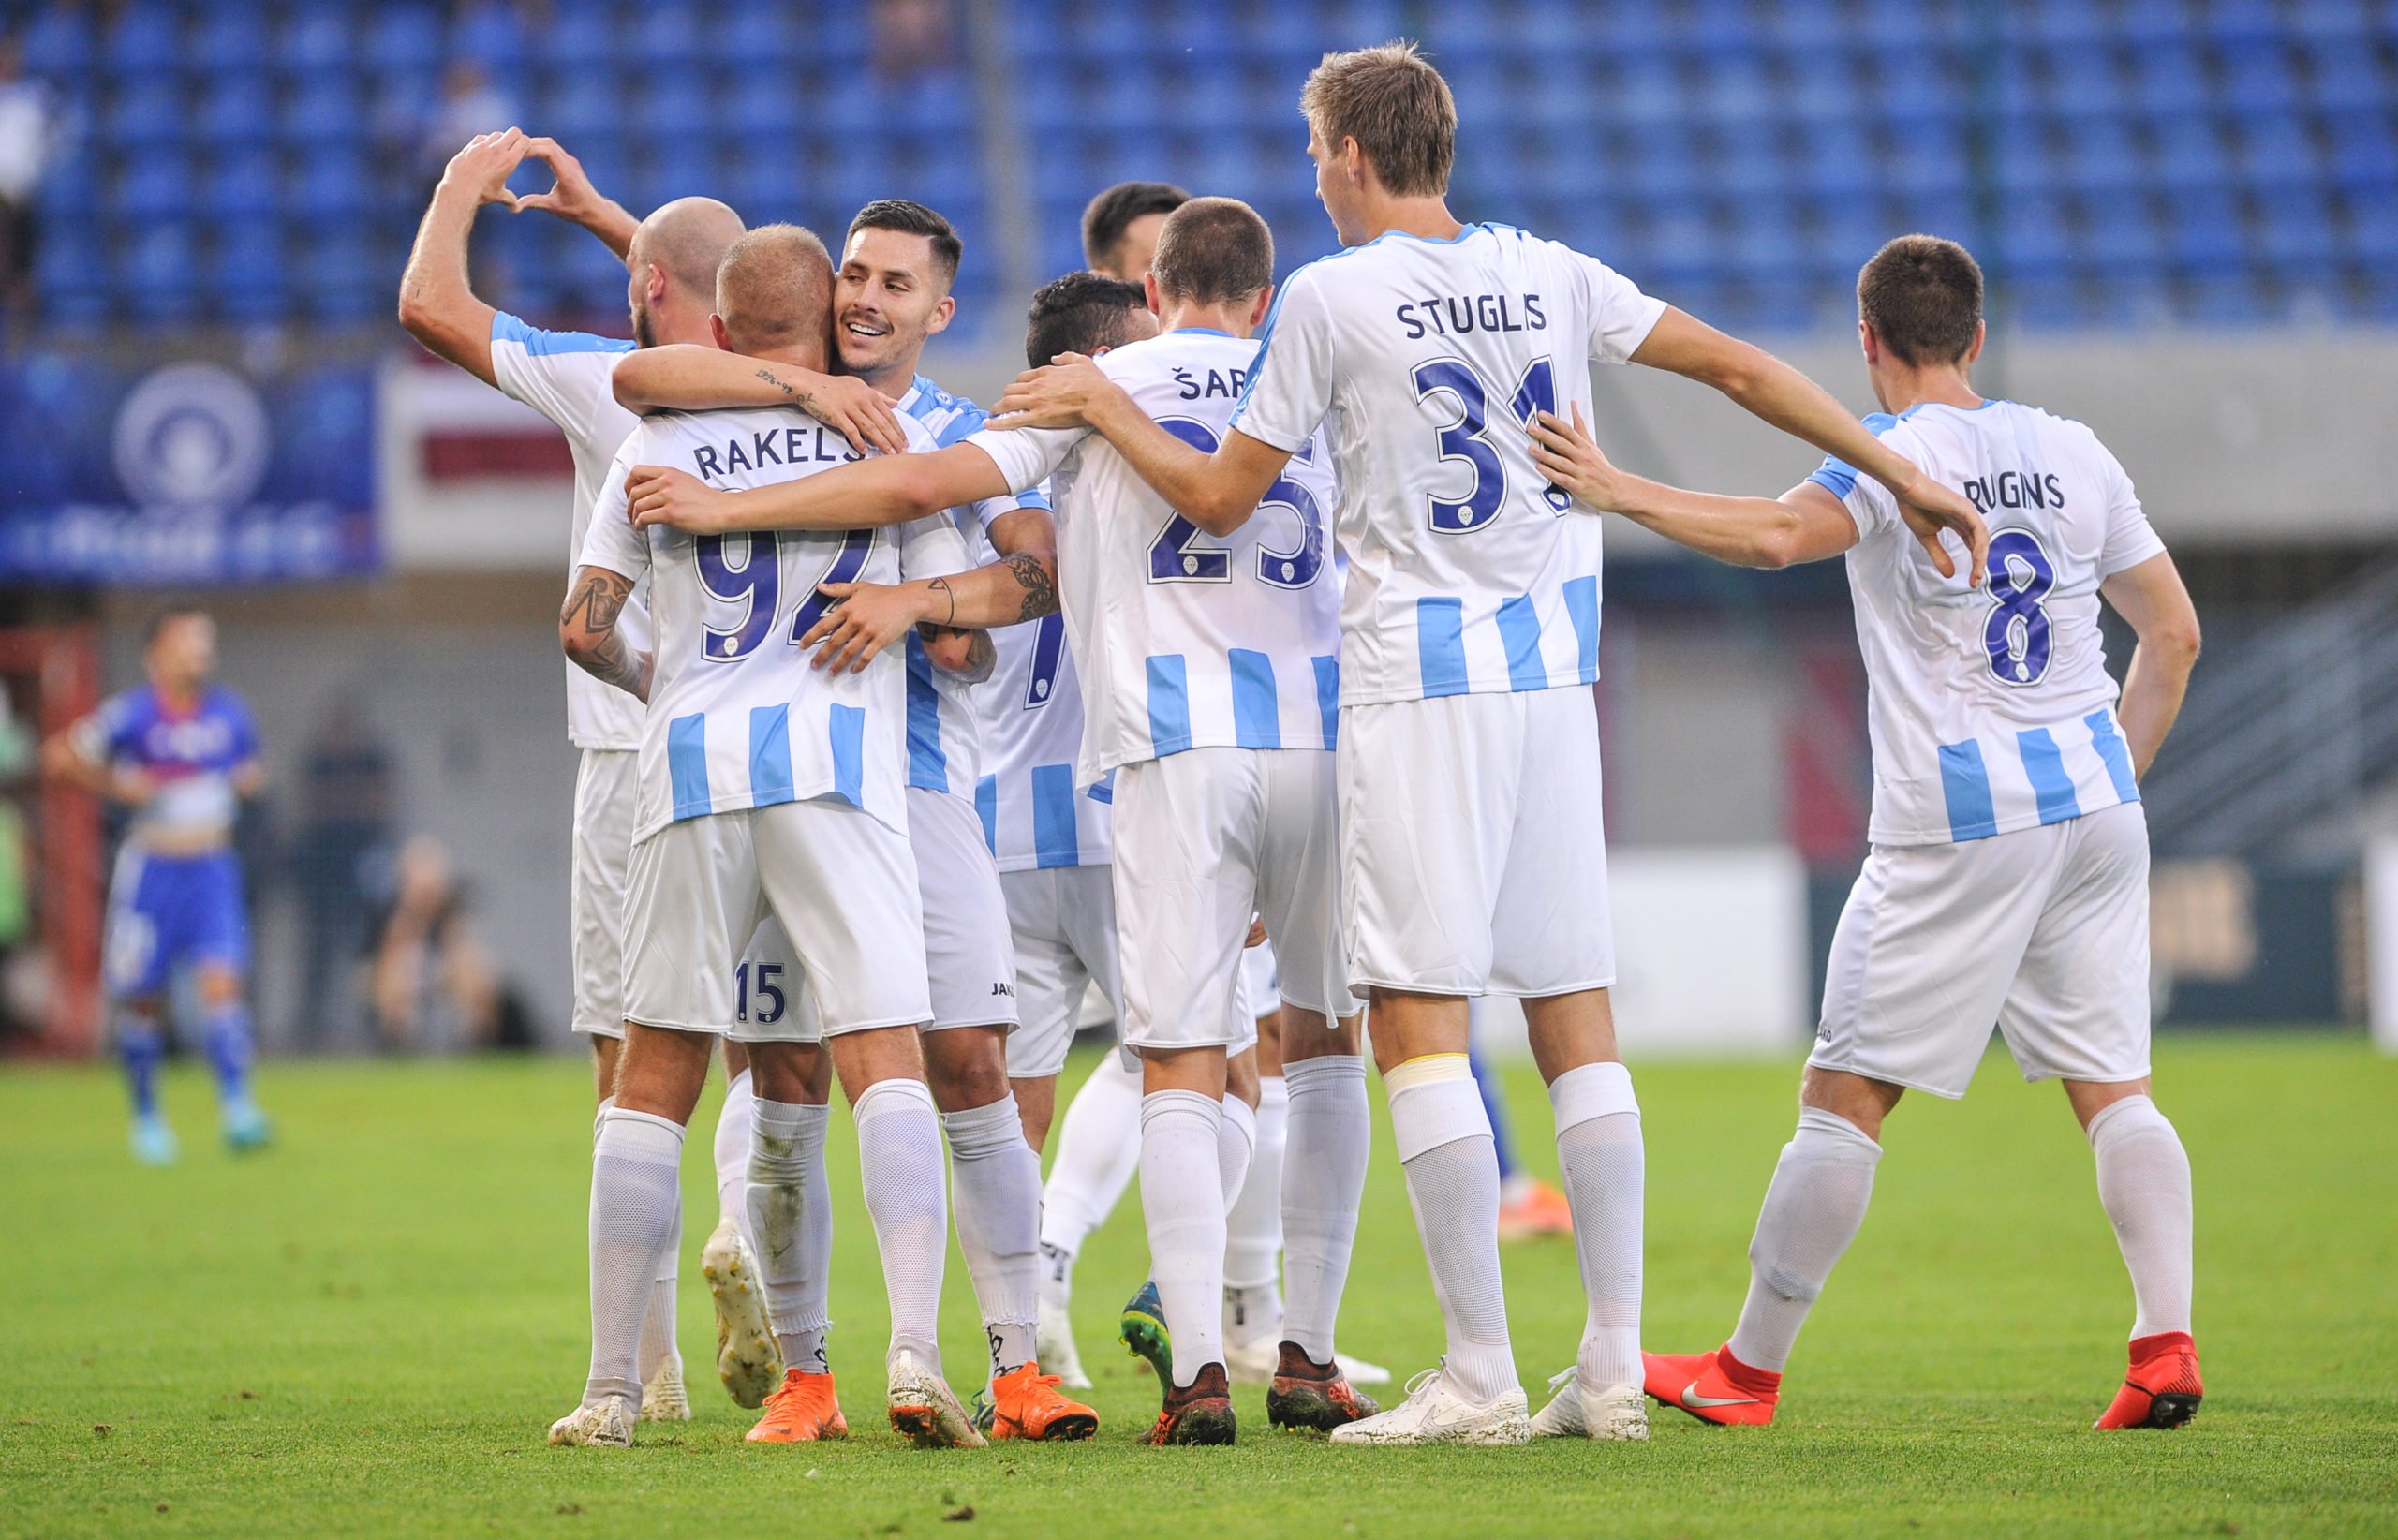 Riga FC celebrate a goal in Europe